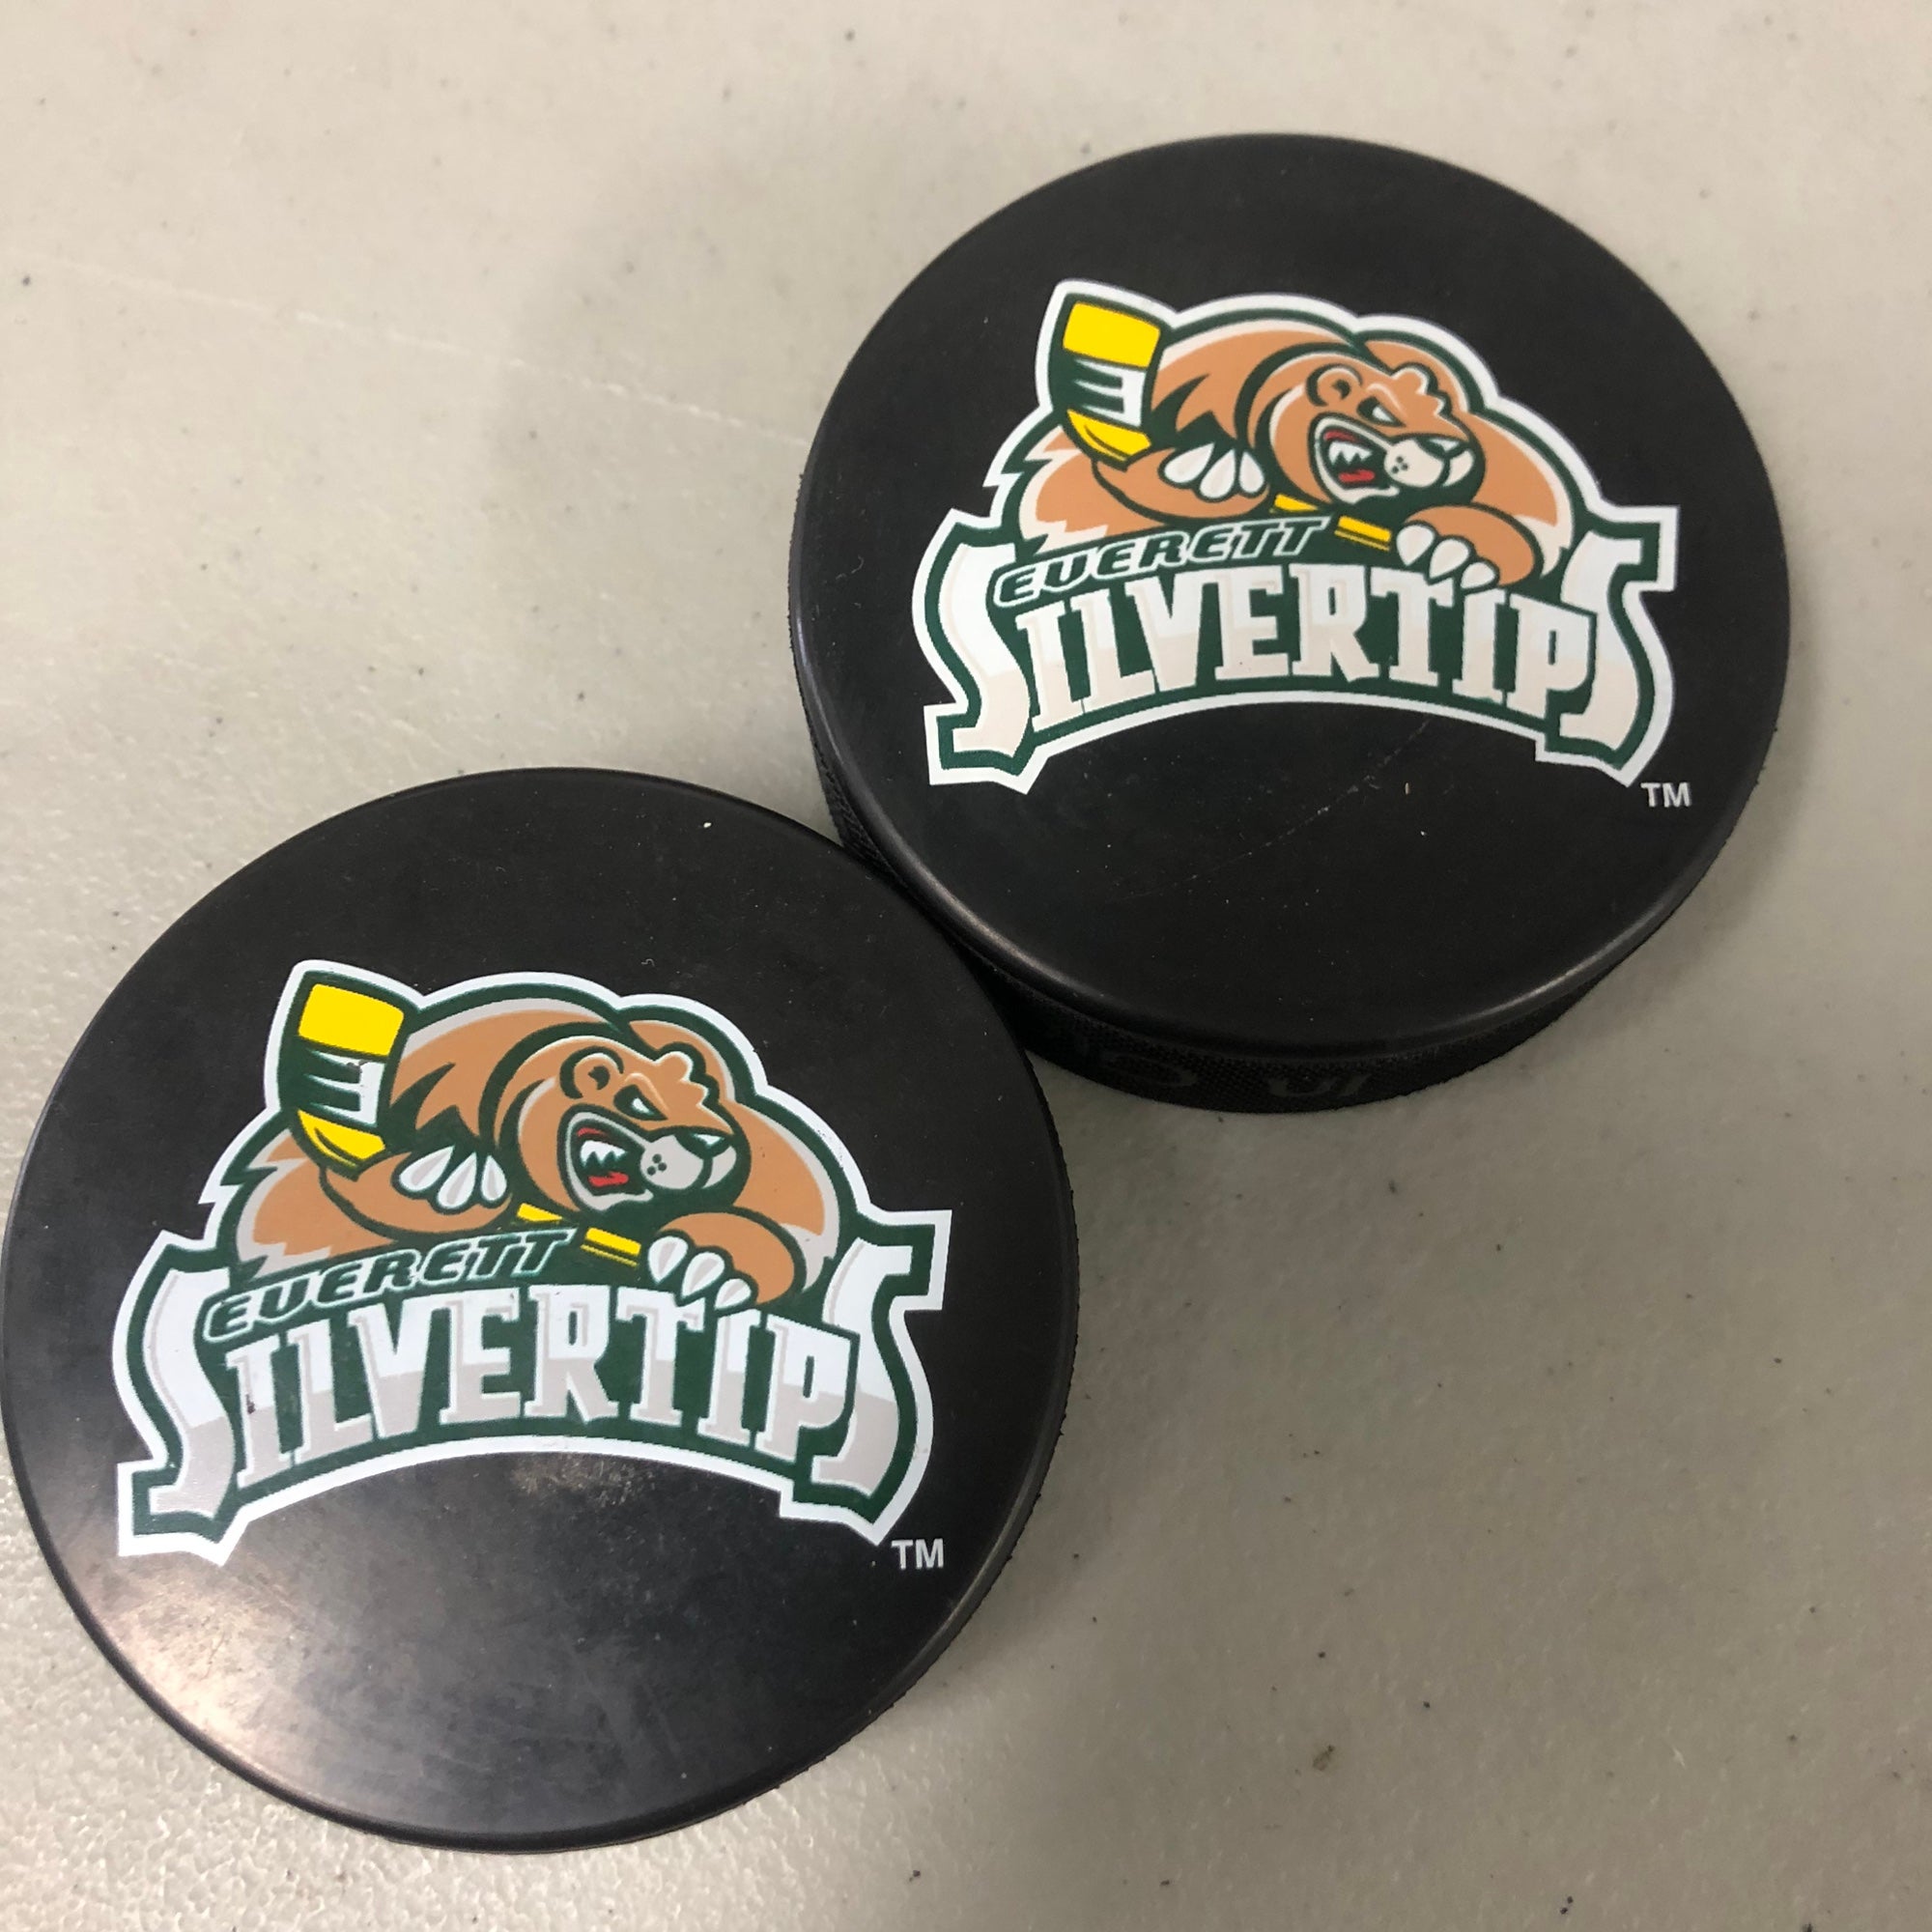 Everett Silvertips  Hockey logos, Everett silvertips, Team colors